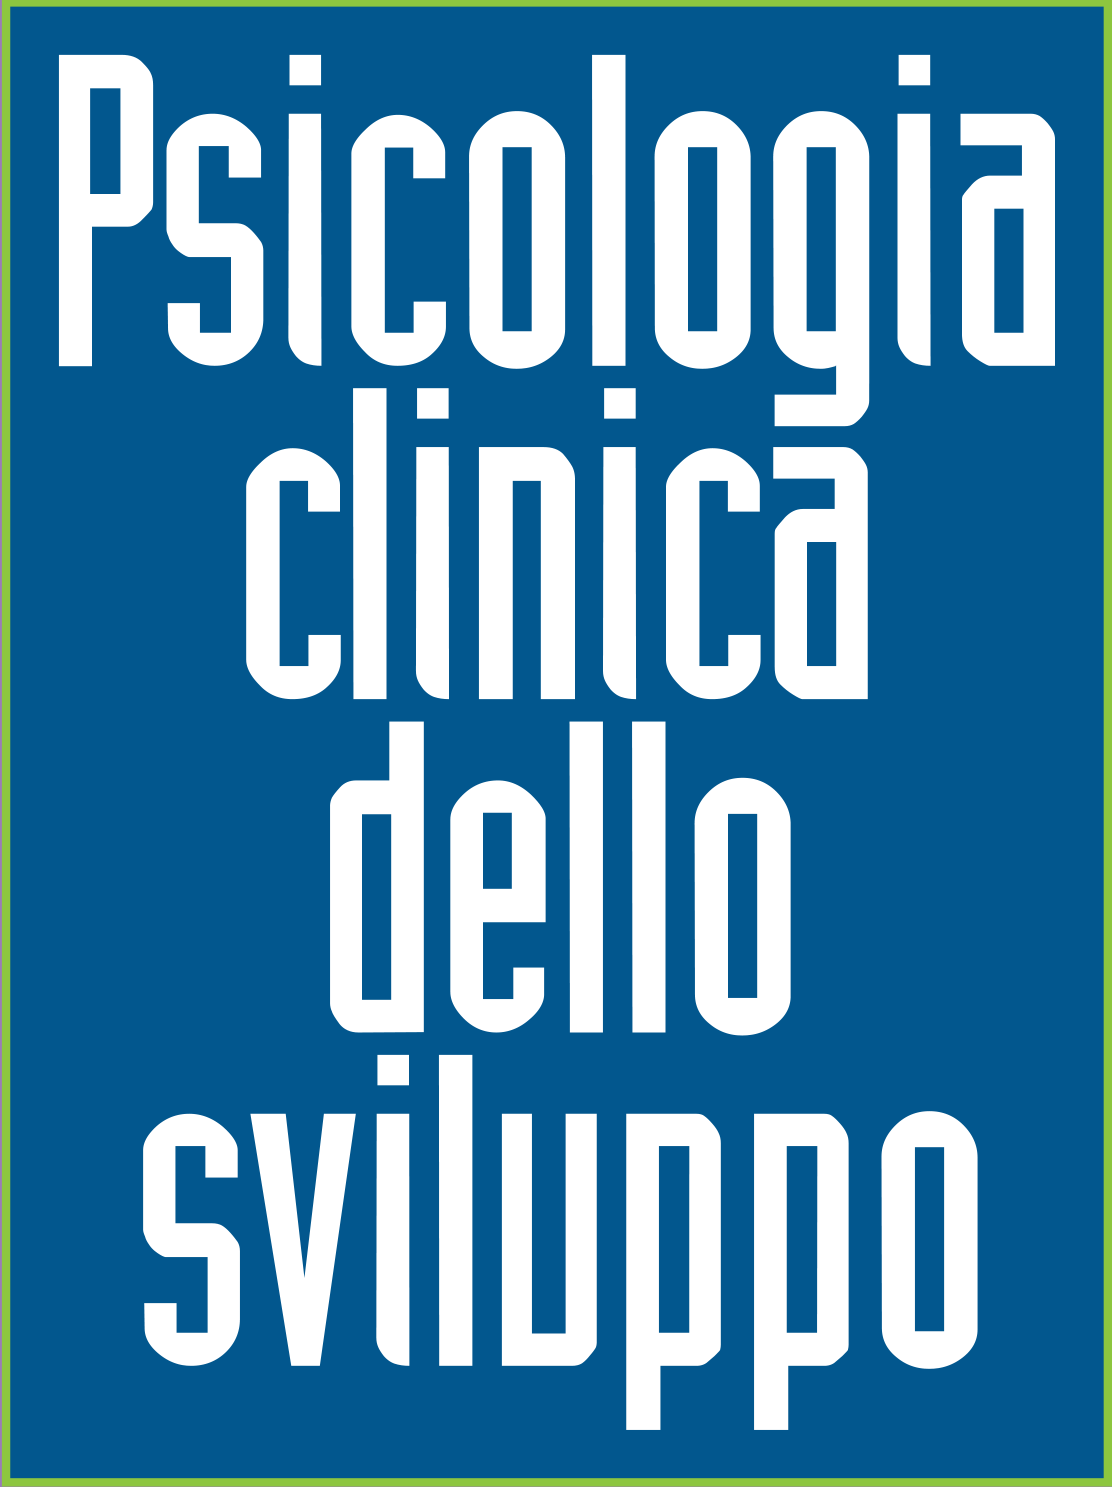 Logo Psicologia clicnica dello sviluppo